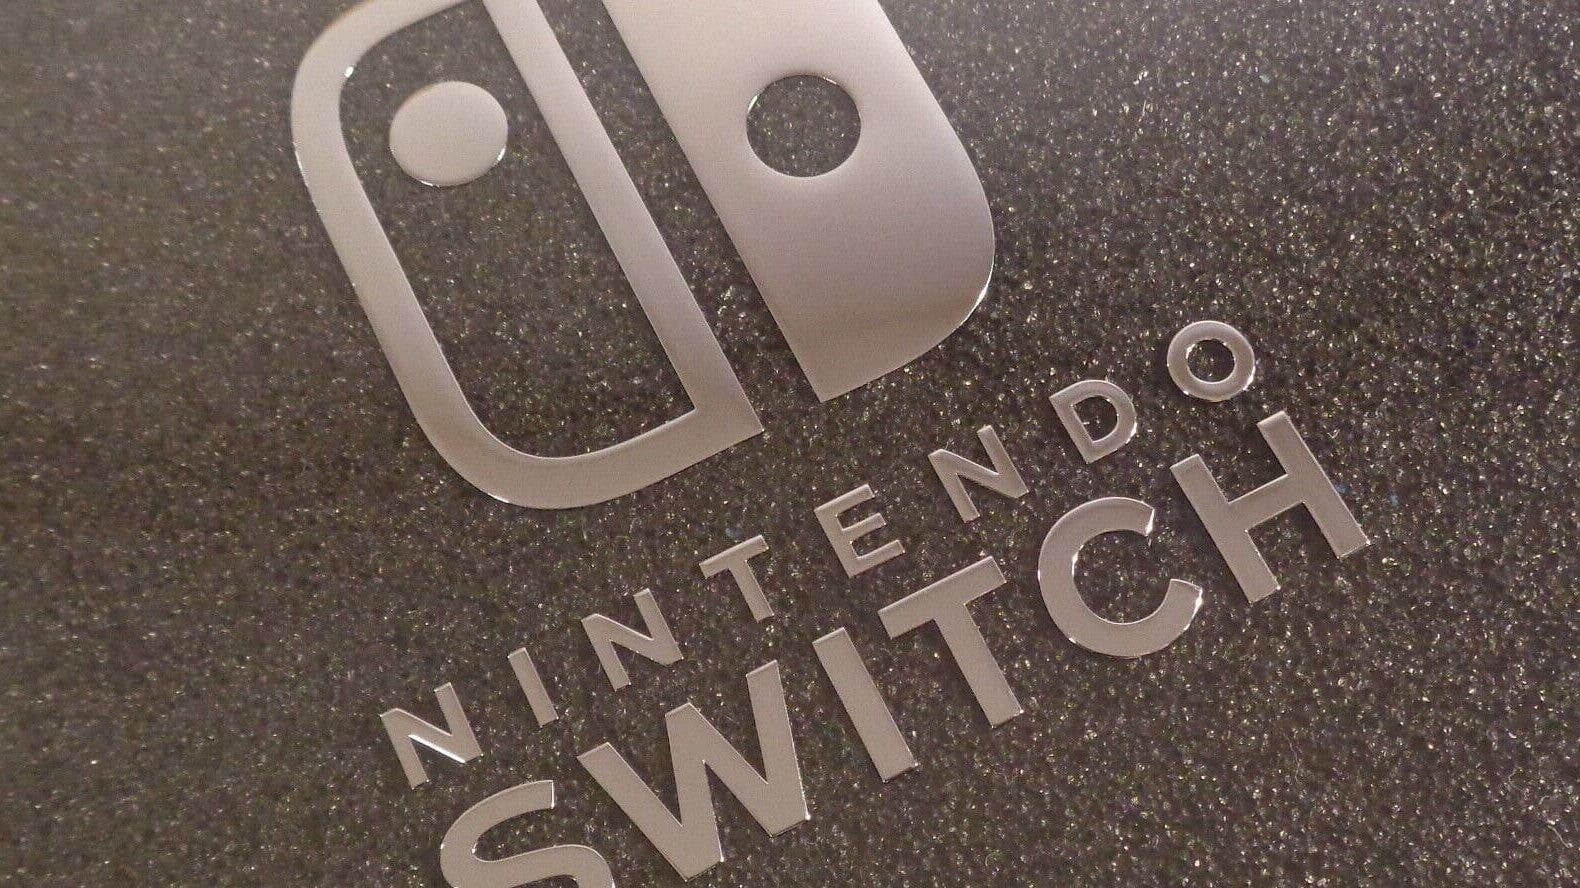 Nintendo Switch 2 contaría con estas extraordinarias características técnicas, según filtraciones